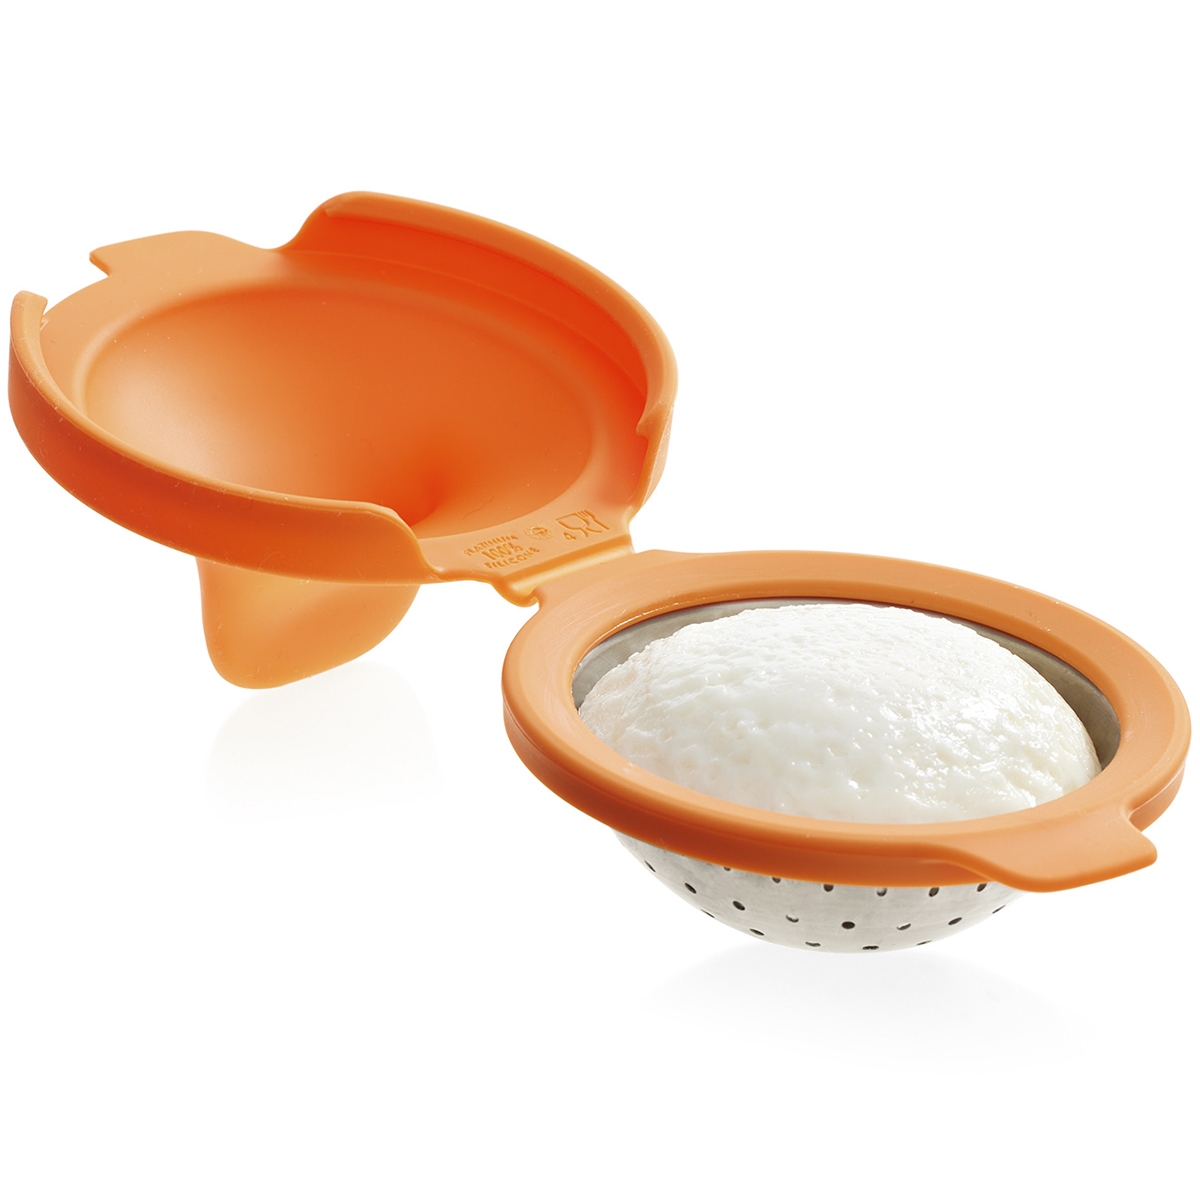 Escalfador de huevos embalaje de caja de Kraft sin BPA para microondas o cocina de huevo Vasos de silicona para escalfar huevos con soporte de anillo 